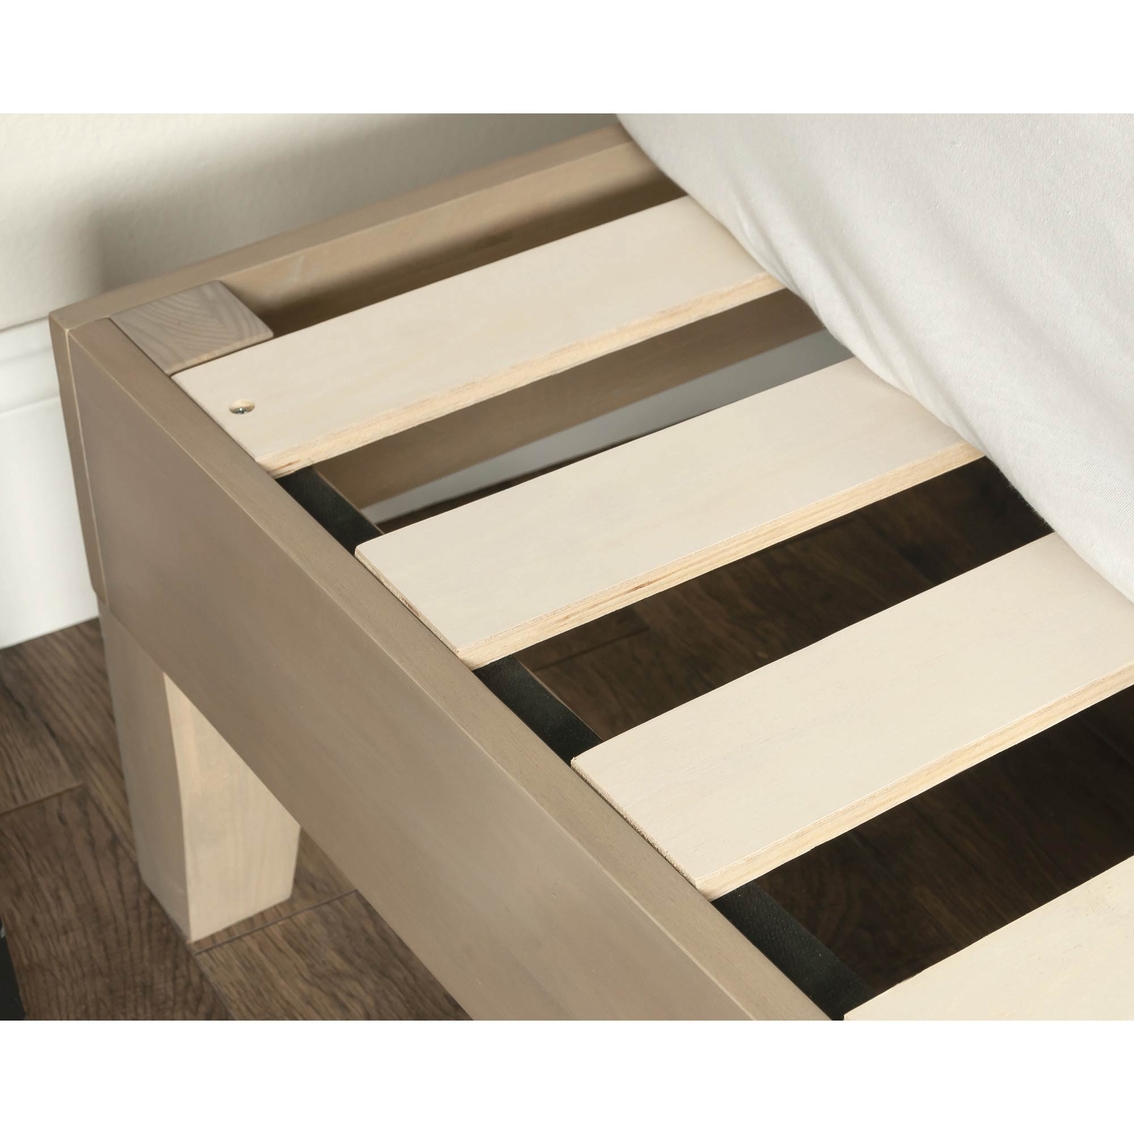 Sauder Queen Size Platform Bed, Solid Wood - Image 3 of 6